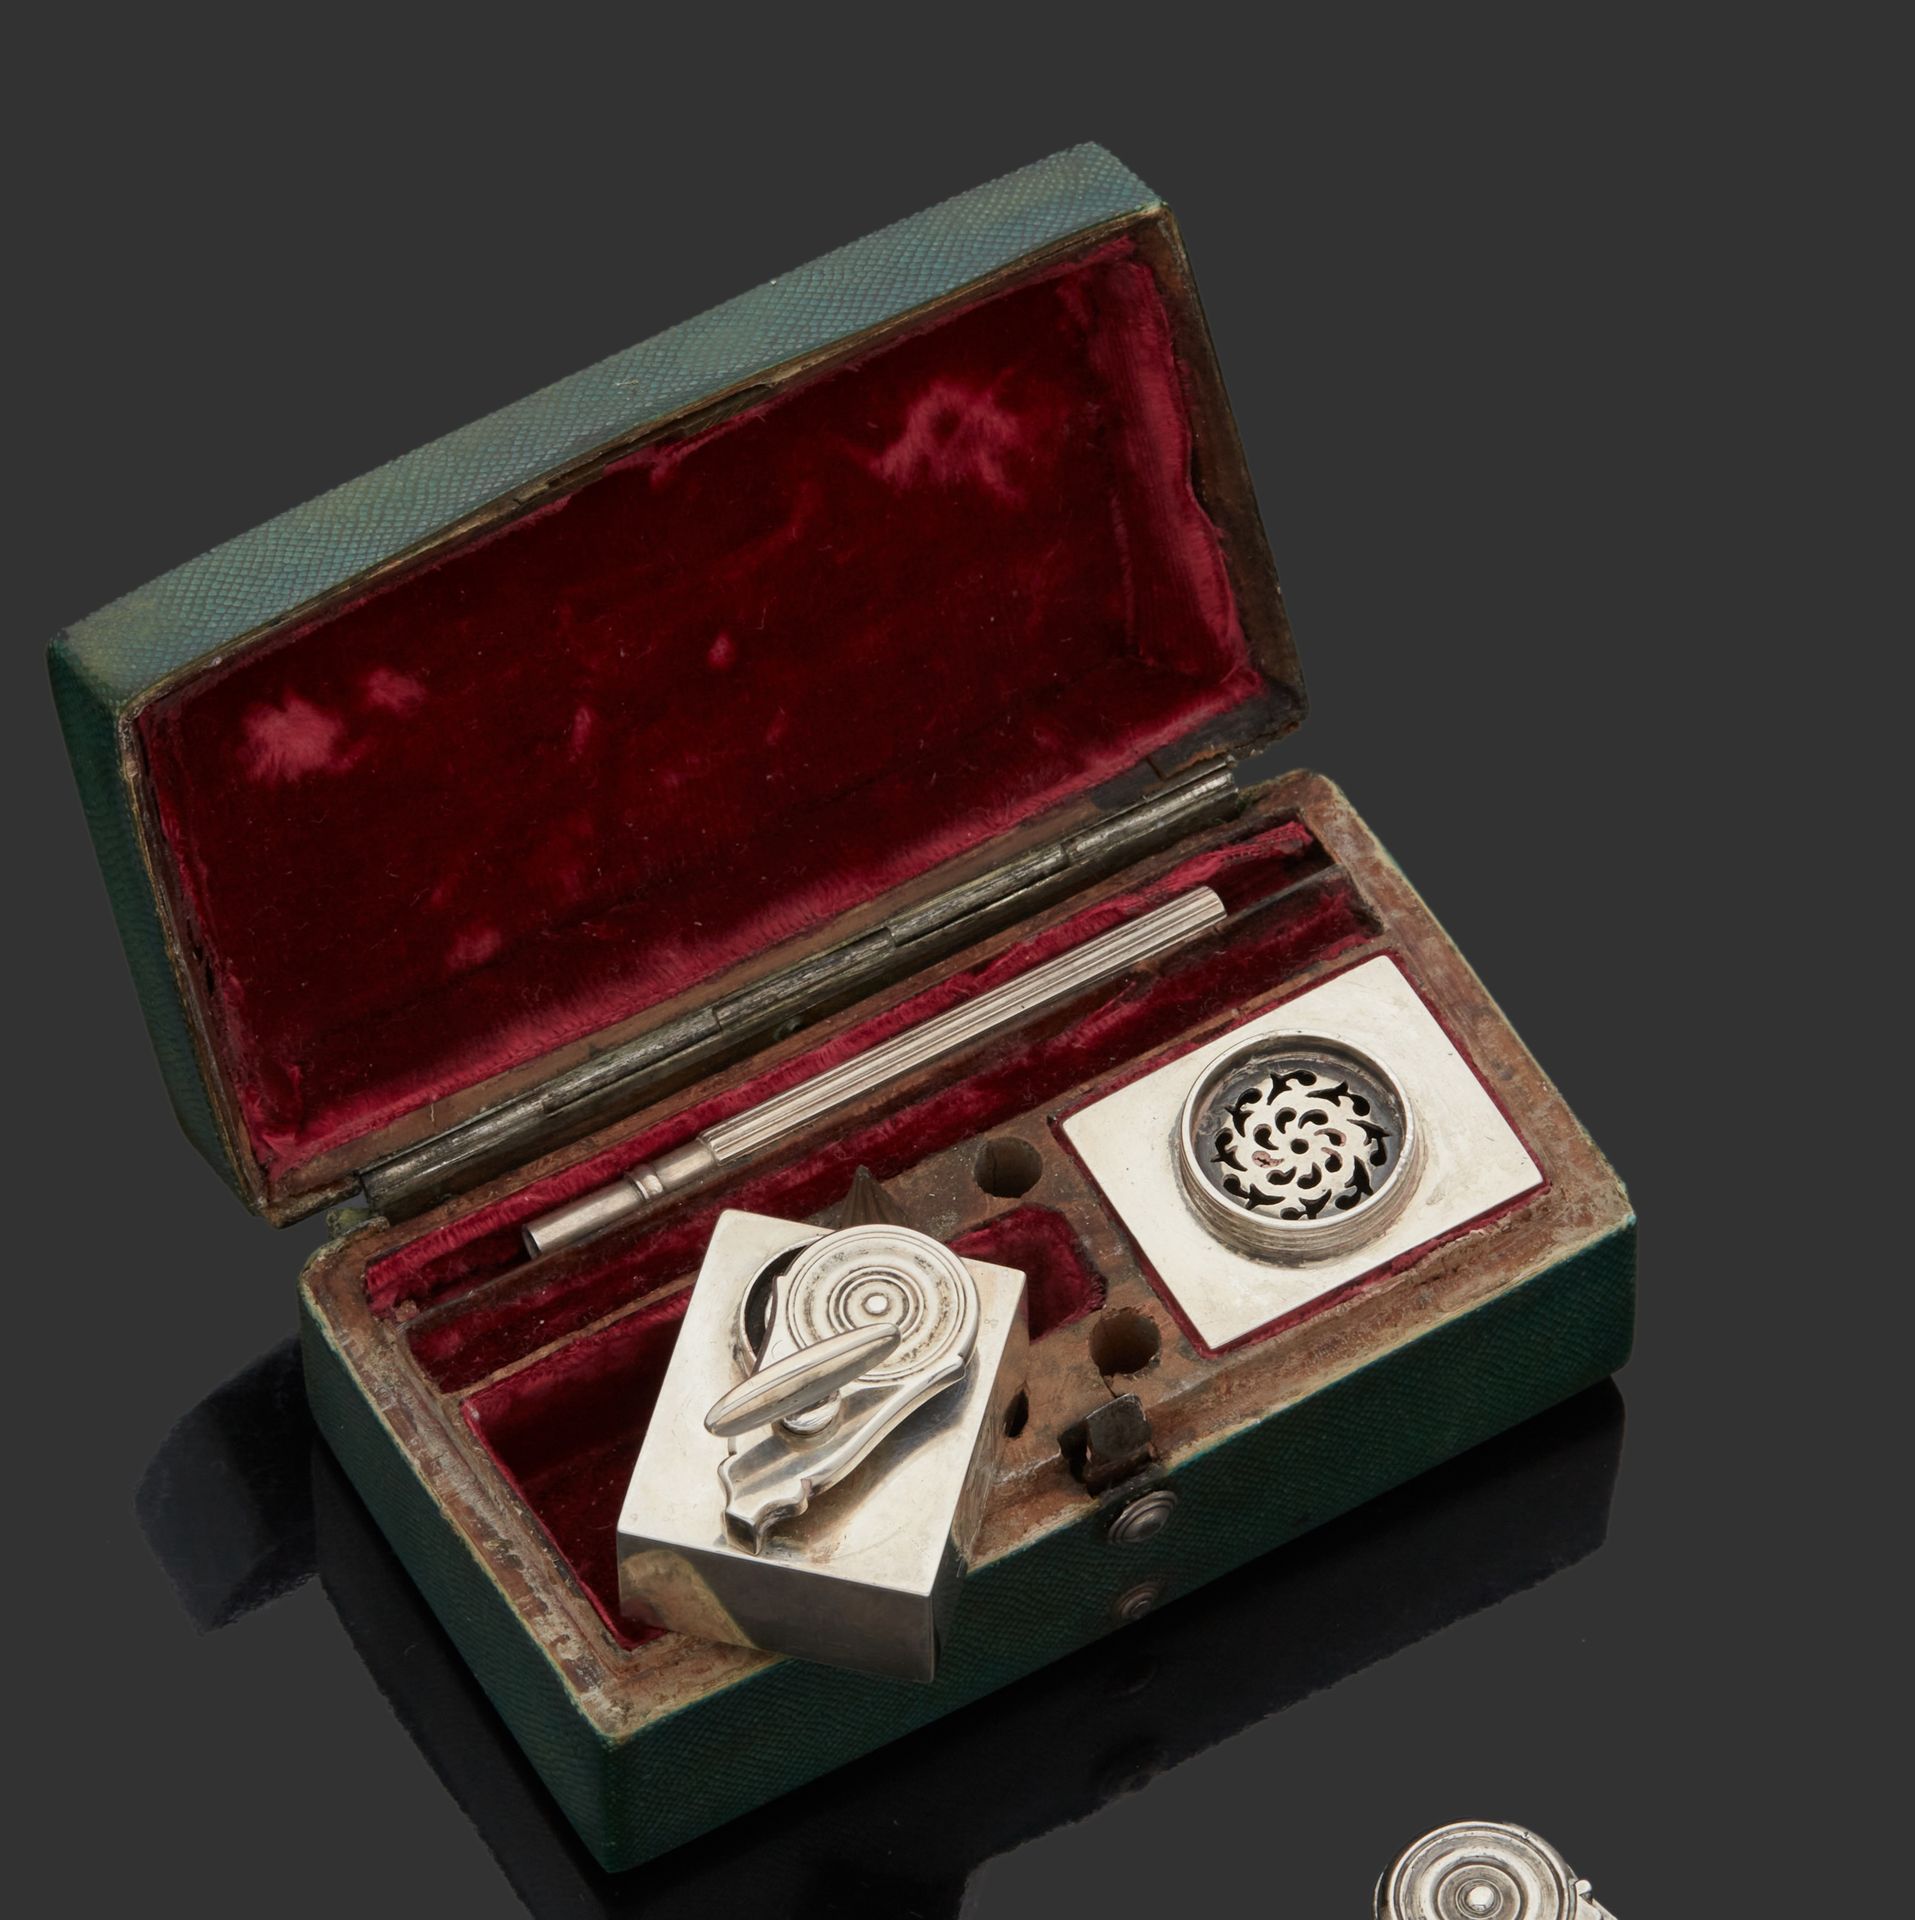 Null 巴黎 1761 - 1762
小型旅行墨斗和沙漏，装在其长方形铰链式的沙绿箱子里，包含一个蝴蝶式的墨斗和一个沙漏（盖子不见了），每个元素上都刻有归属于&hellip;